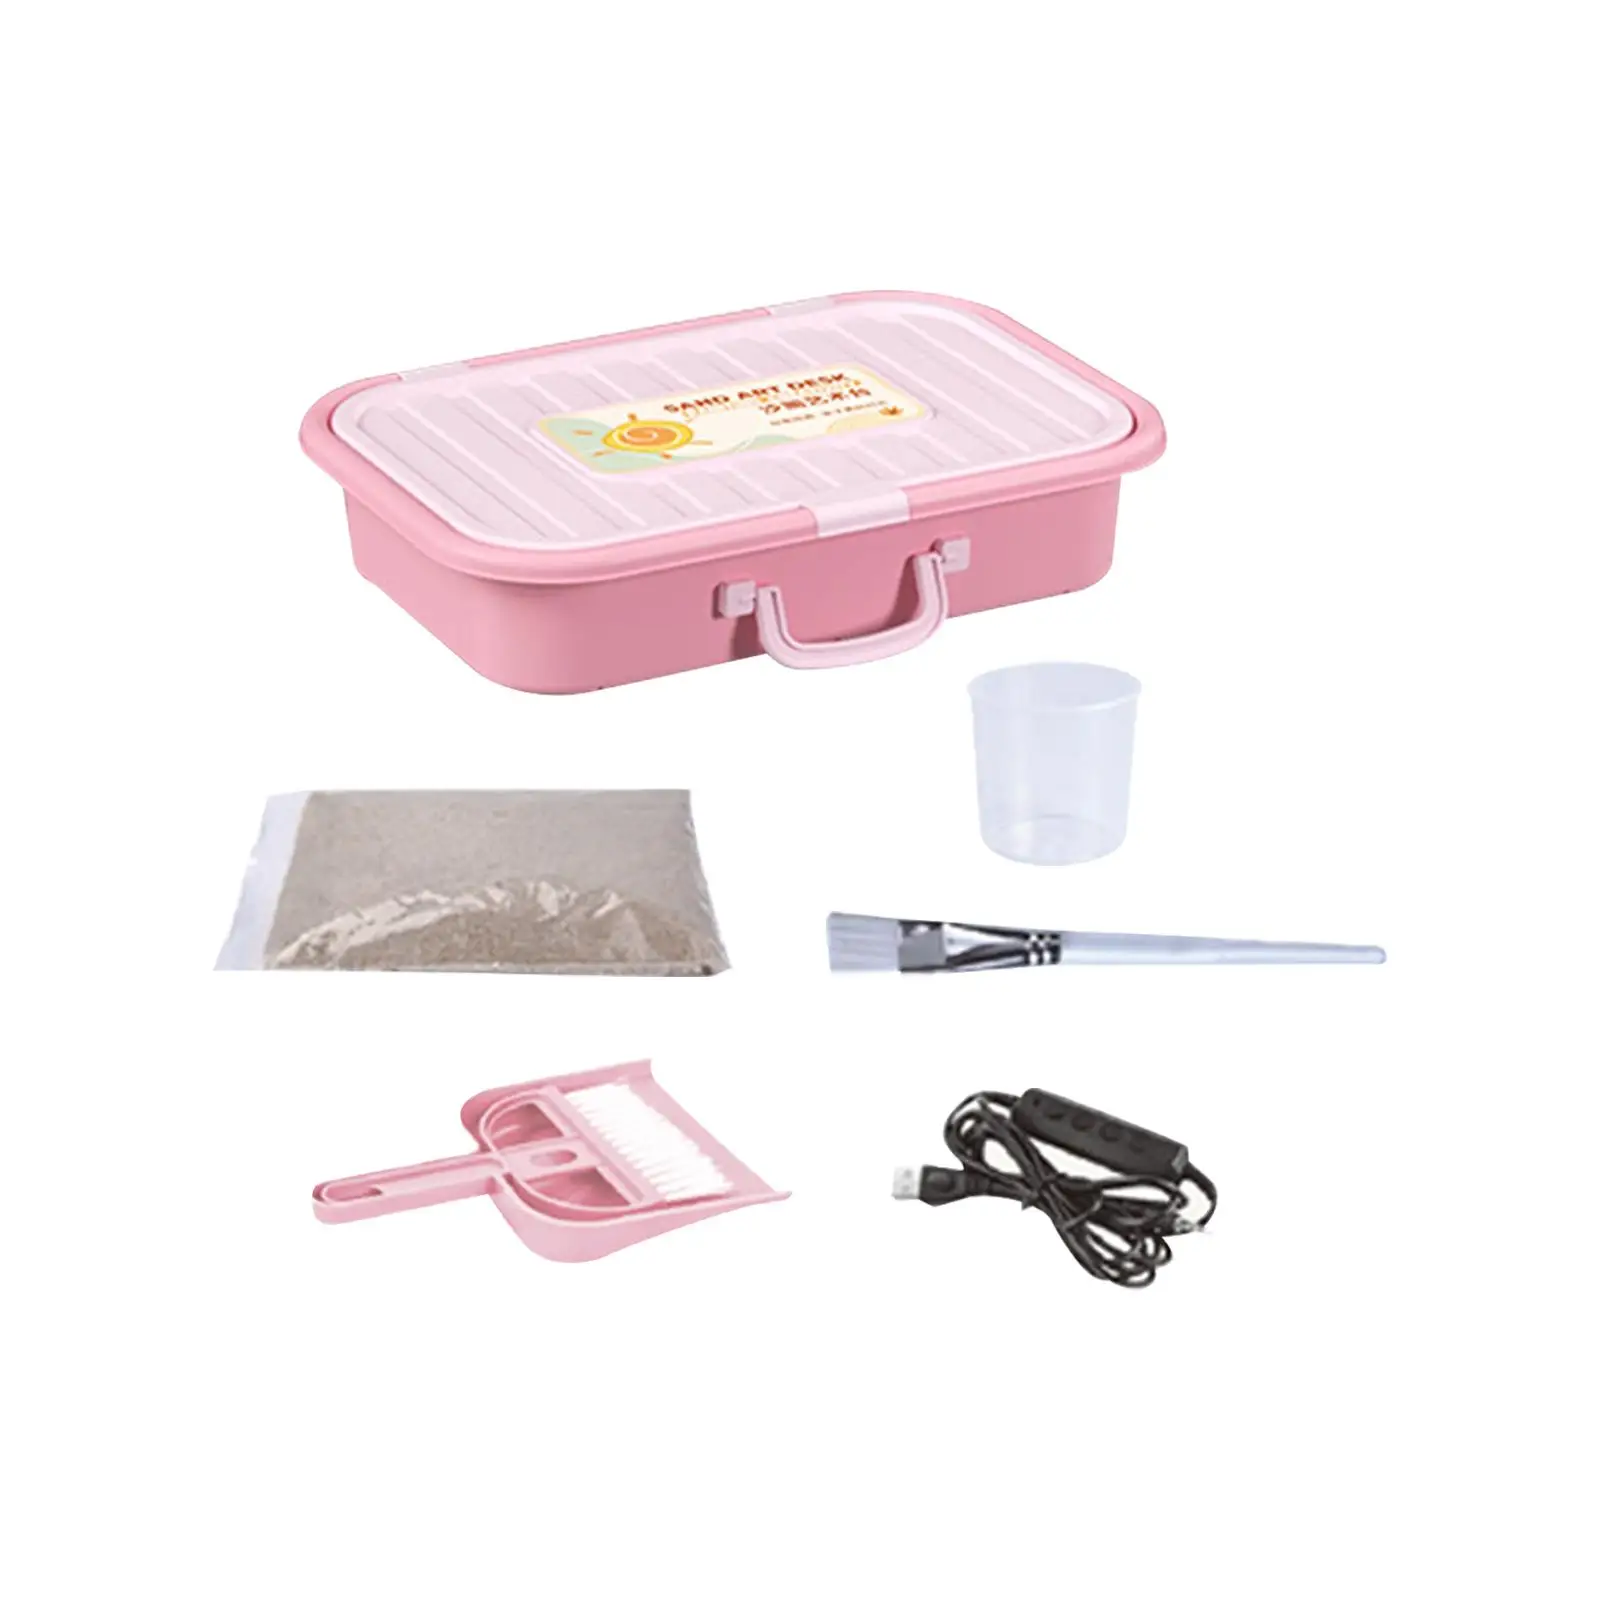 Light Box Sand Table Sandbox Educational Toys Sand Art Kits for Gift Birthday Children